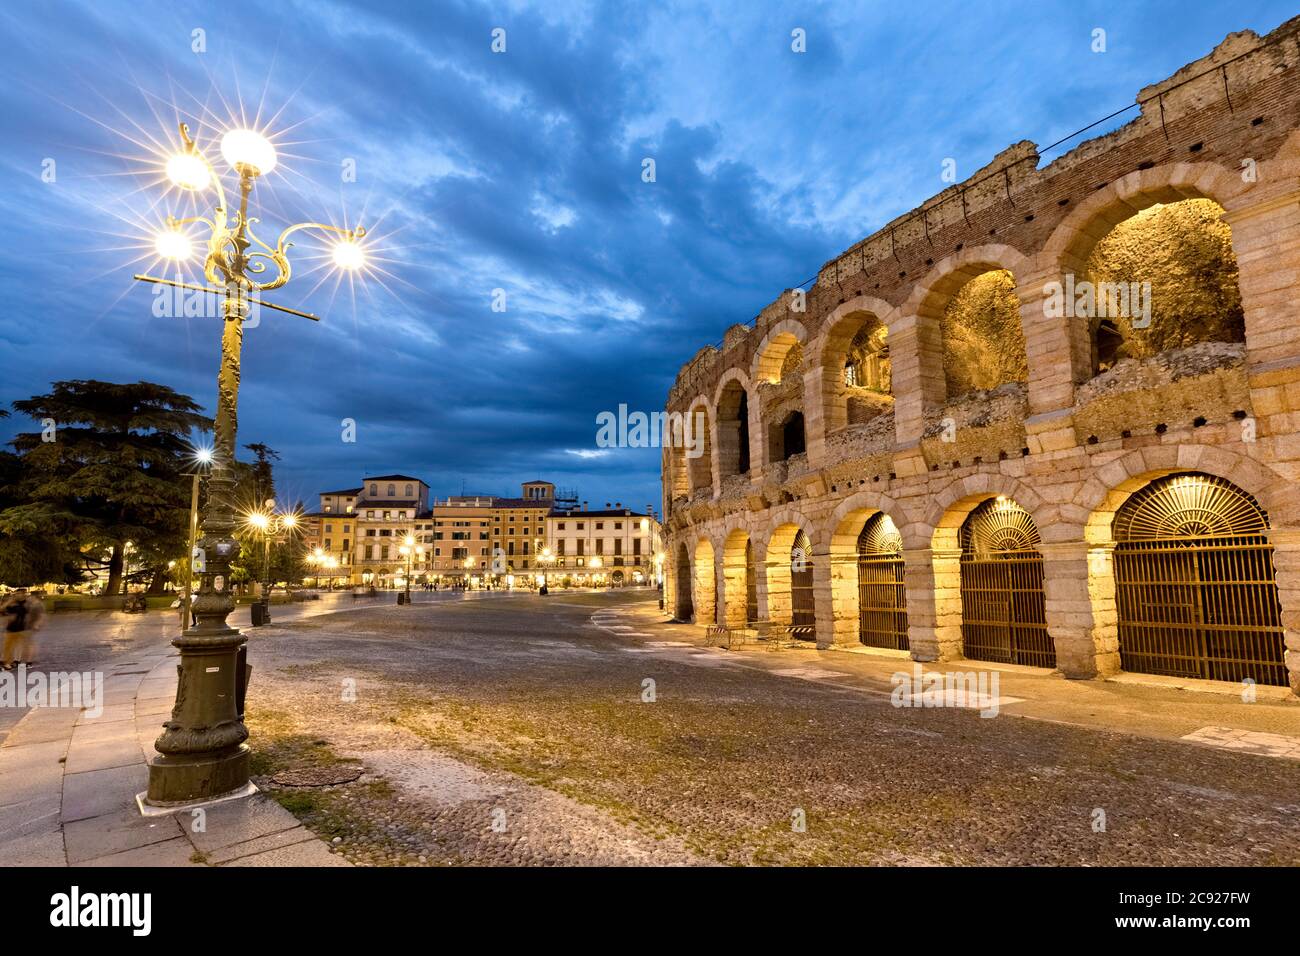 Verona: Der Bra Platz und das römische Amphitheater der Arena. Venetien, Italien, Europa. Stockfoto